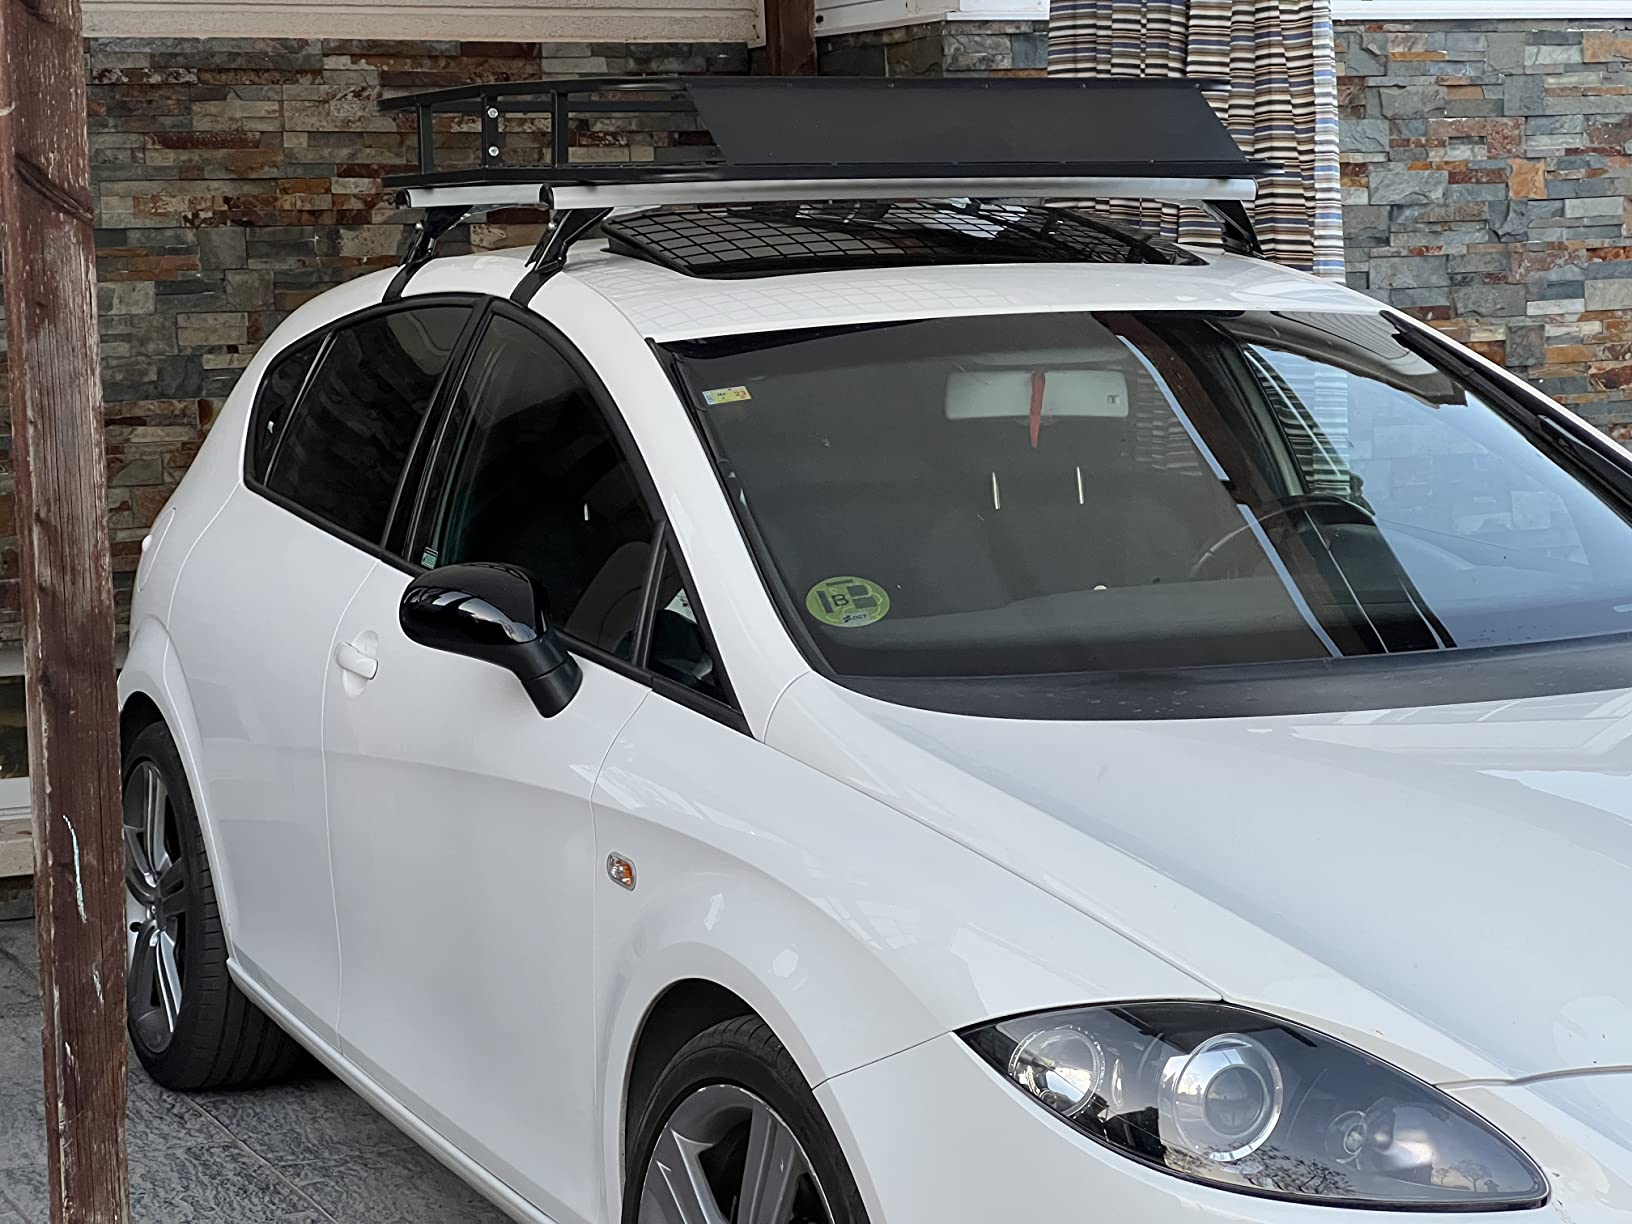 Baca Portaequipajes de techo suave universal para coche, portaequipajes  fijo con correas ajustables Meterk Baca